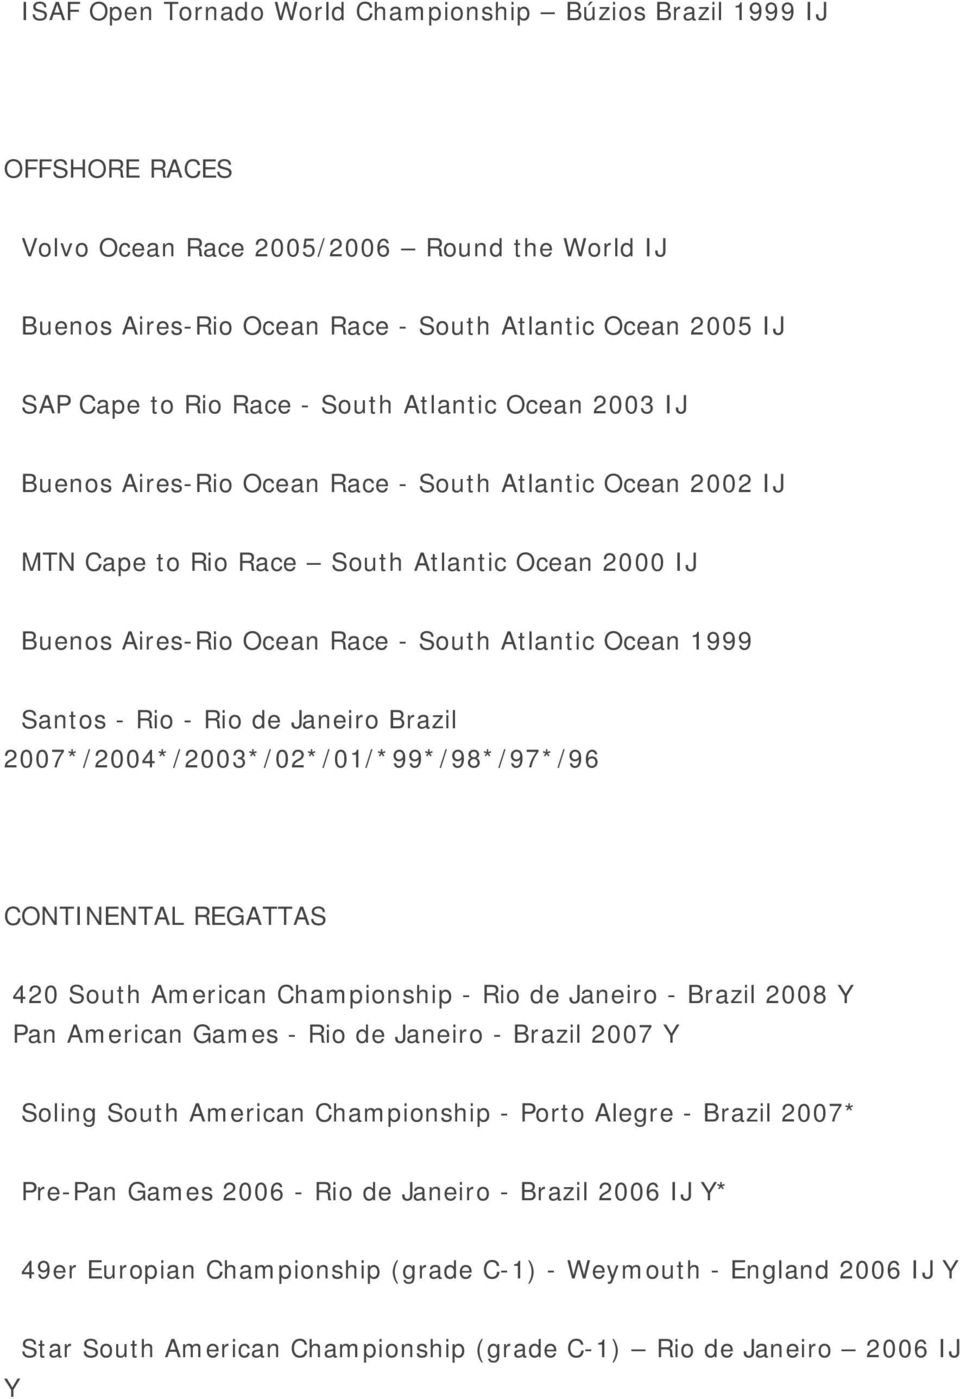 Santos - Rio - Rio de Janeiro Brazil 2007*/2004*/2003*/02*/01/*99*/98*/97*/96 CONTINENTAL REGATTAS 420 South American Championship - Rio de Janeiro - Brazil 2008 Y Pan American Games - Rio de Janeiro